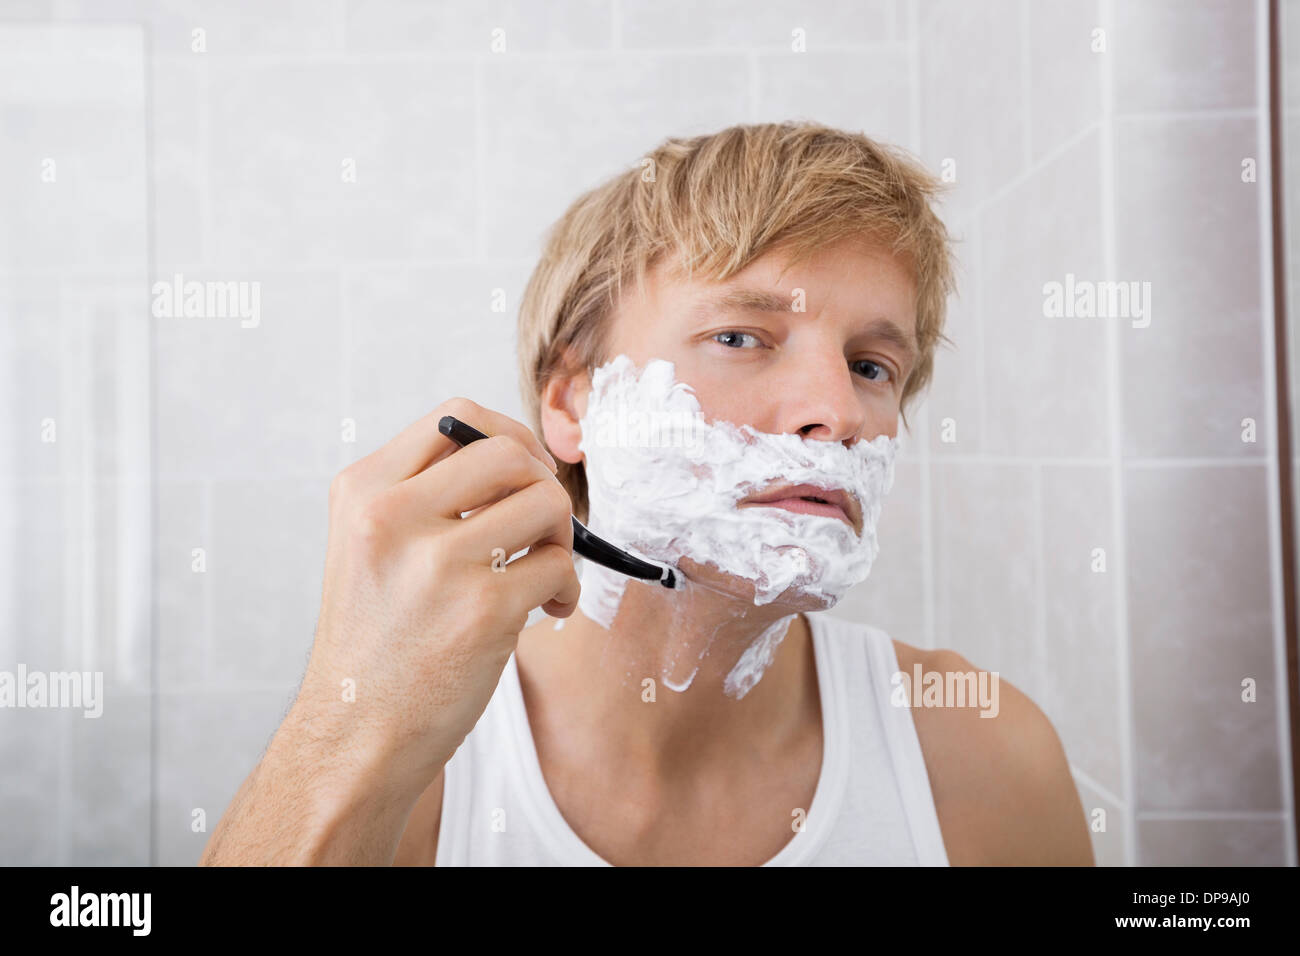 Porträt des mittleren Erwachsenenalter Menschen rasieren im Bad Stockfoto